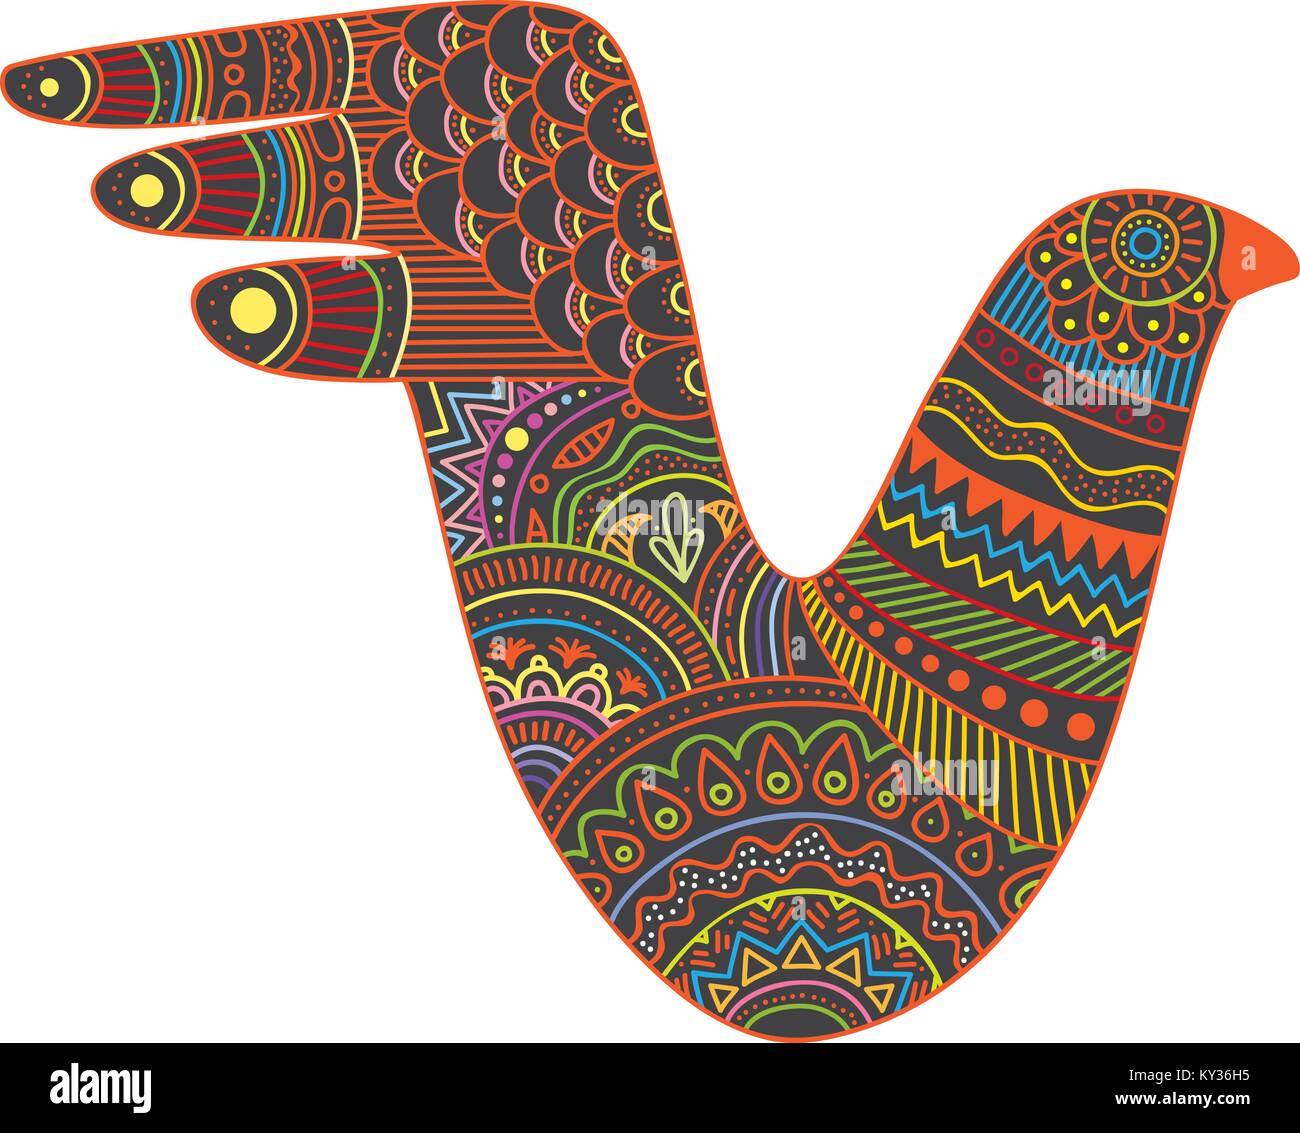 Creature mistiche bird illustrazione vettoriale con colorati el alebrije messicano modello di stile Illustrazione Vettoriale